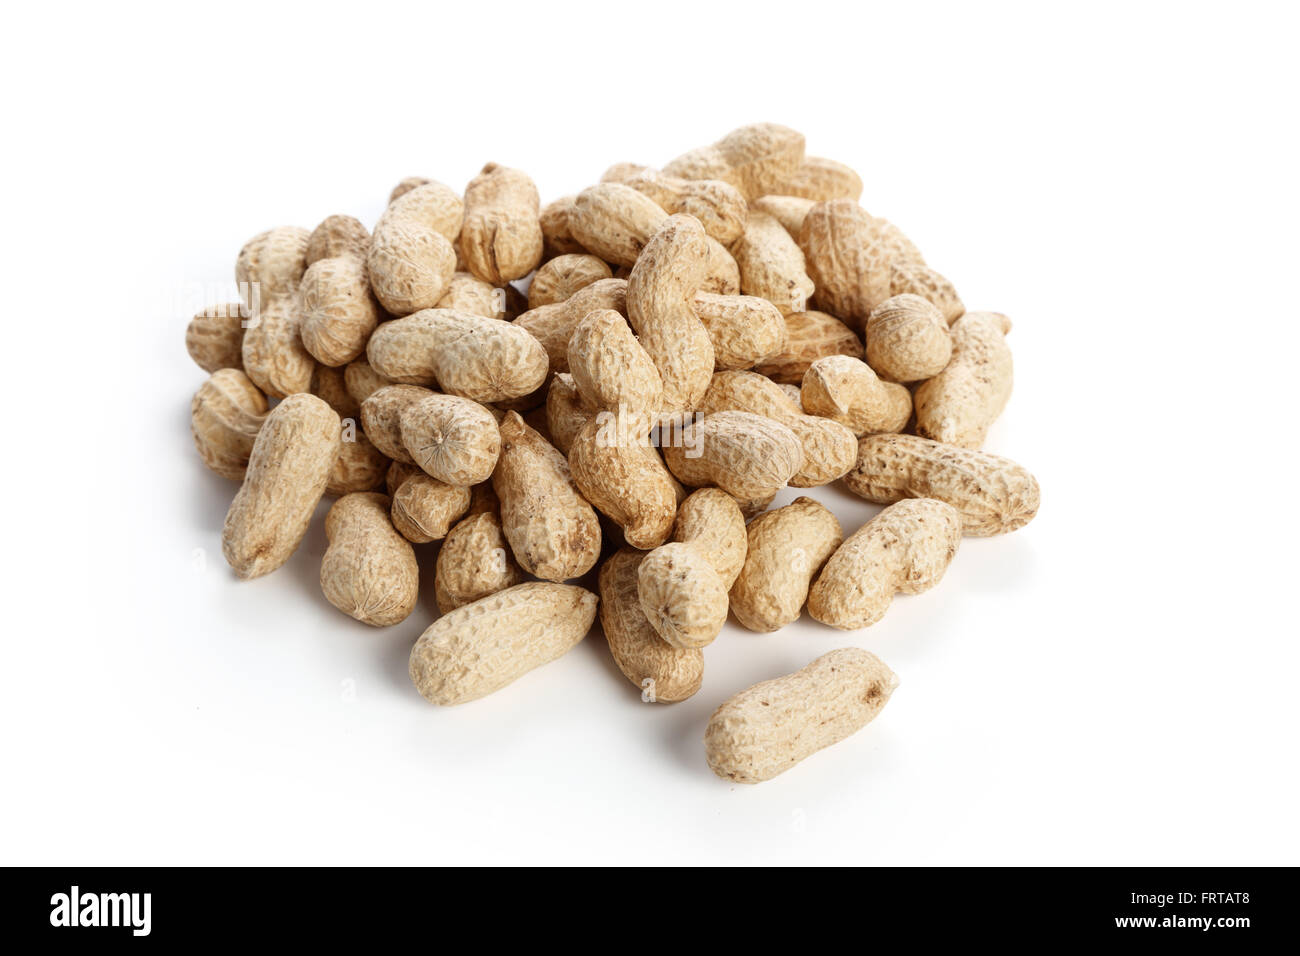 Les cacahuètes à sec, de l'ingrédient alimentaire avec un fond blanc. Banque D'Images